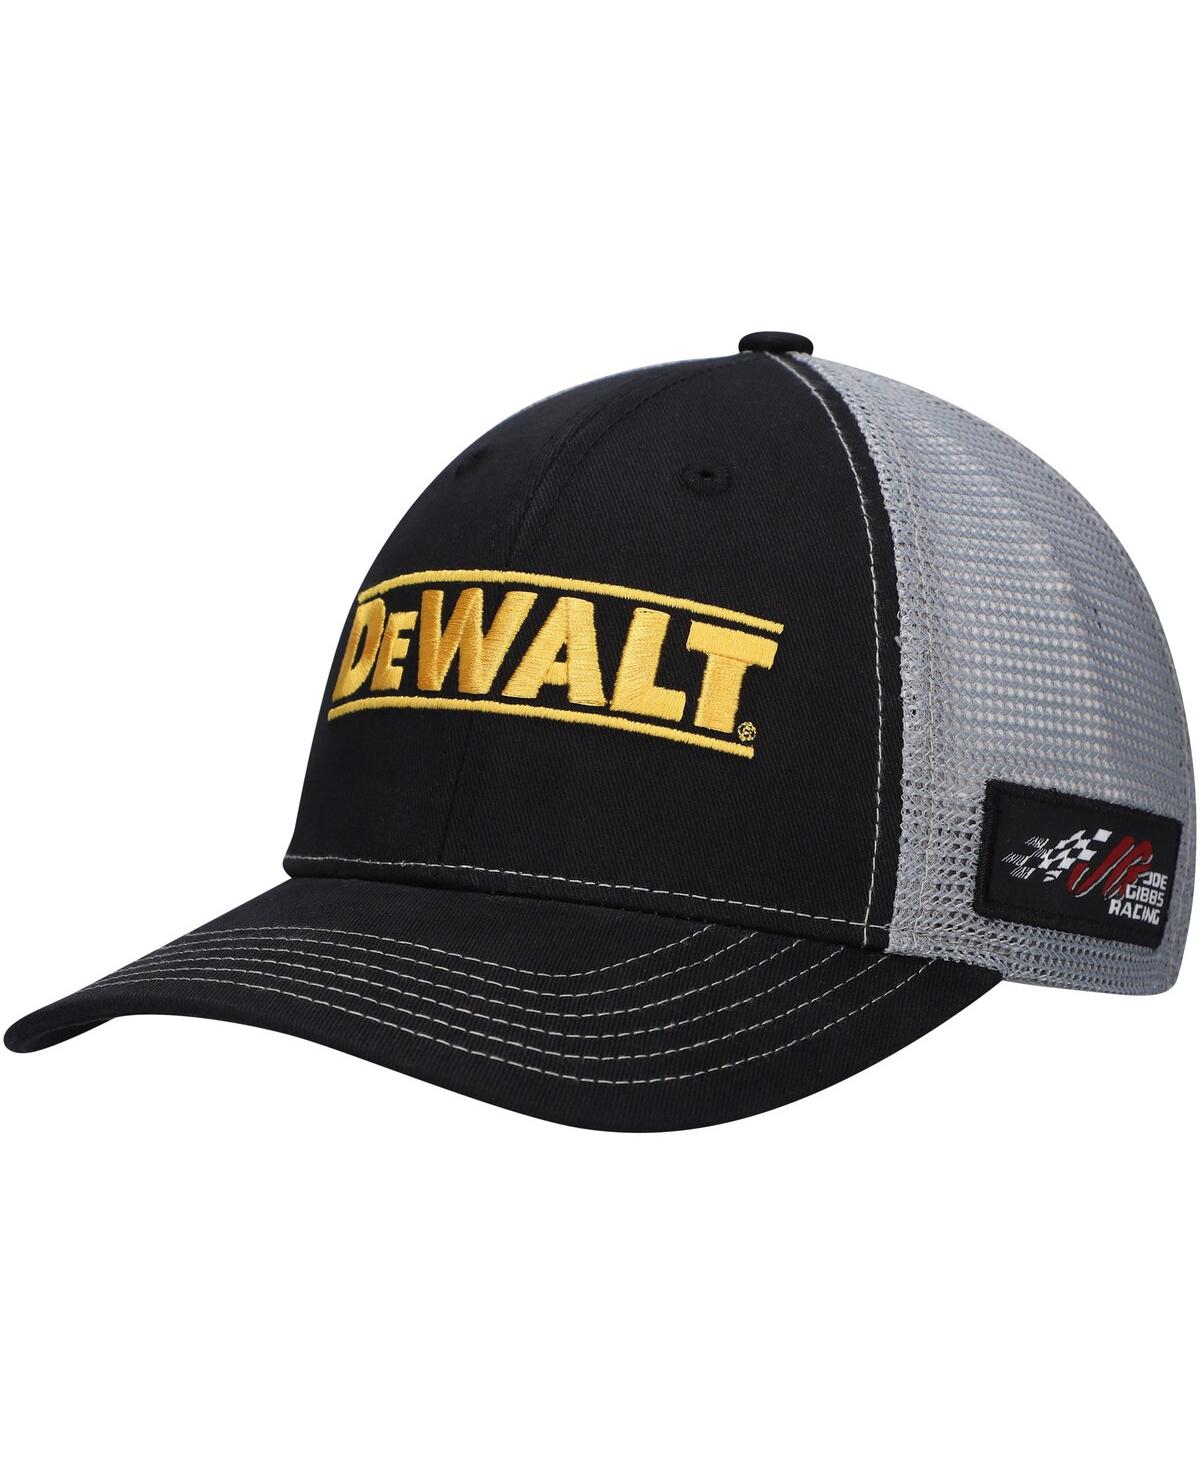 Men's Black/Gray Christopher Bell Sponsor Trucker Adjustable Hat - Black, Gray